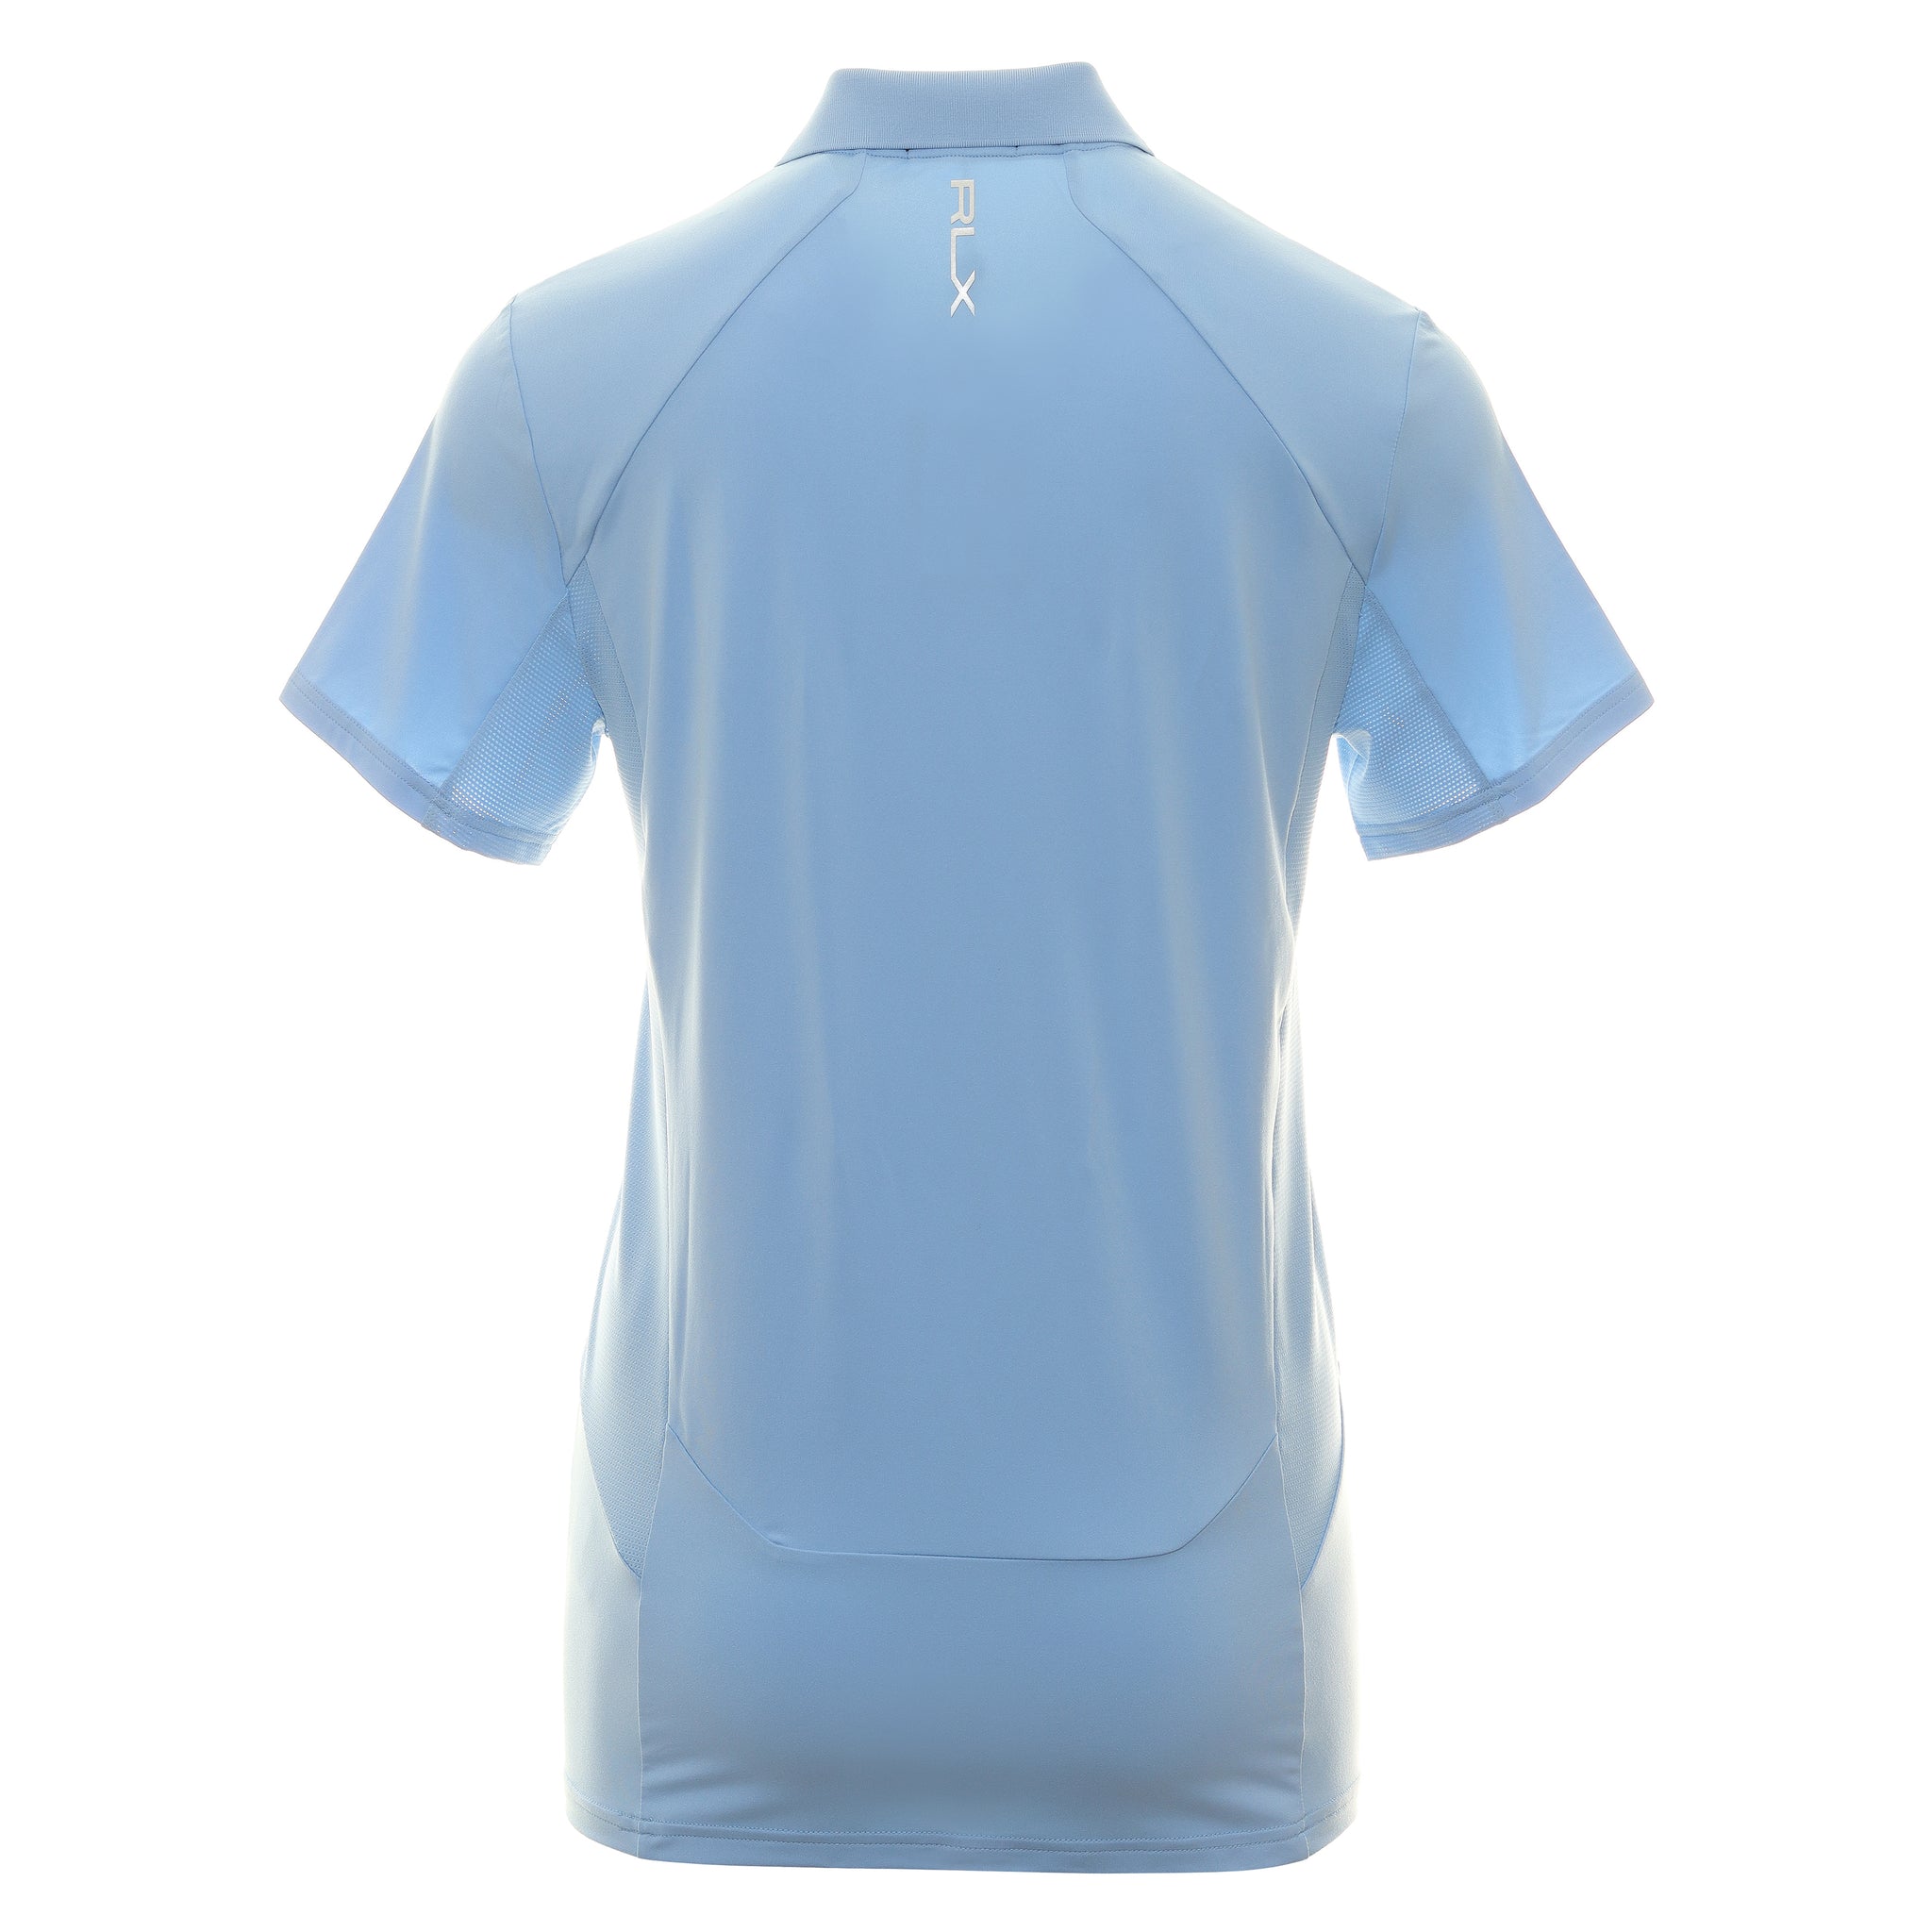 rlx-ralph-lauren-airflow-jersey-polo-shirt-785899228-blue-lagoon-006